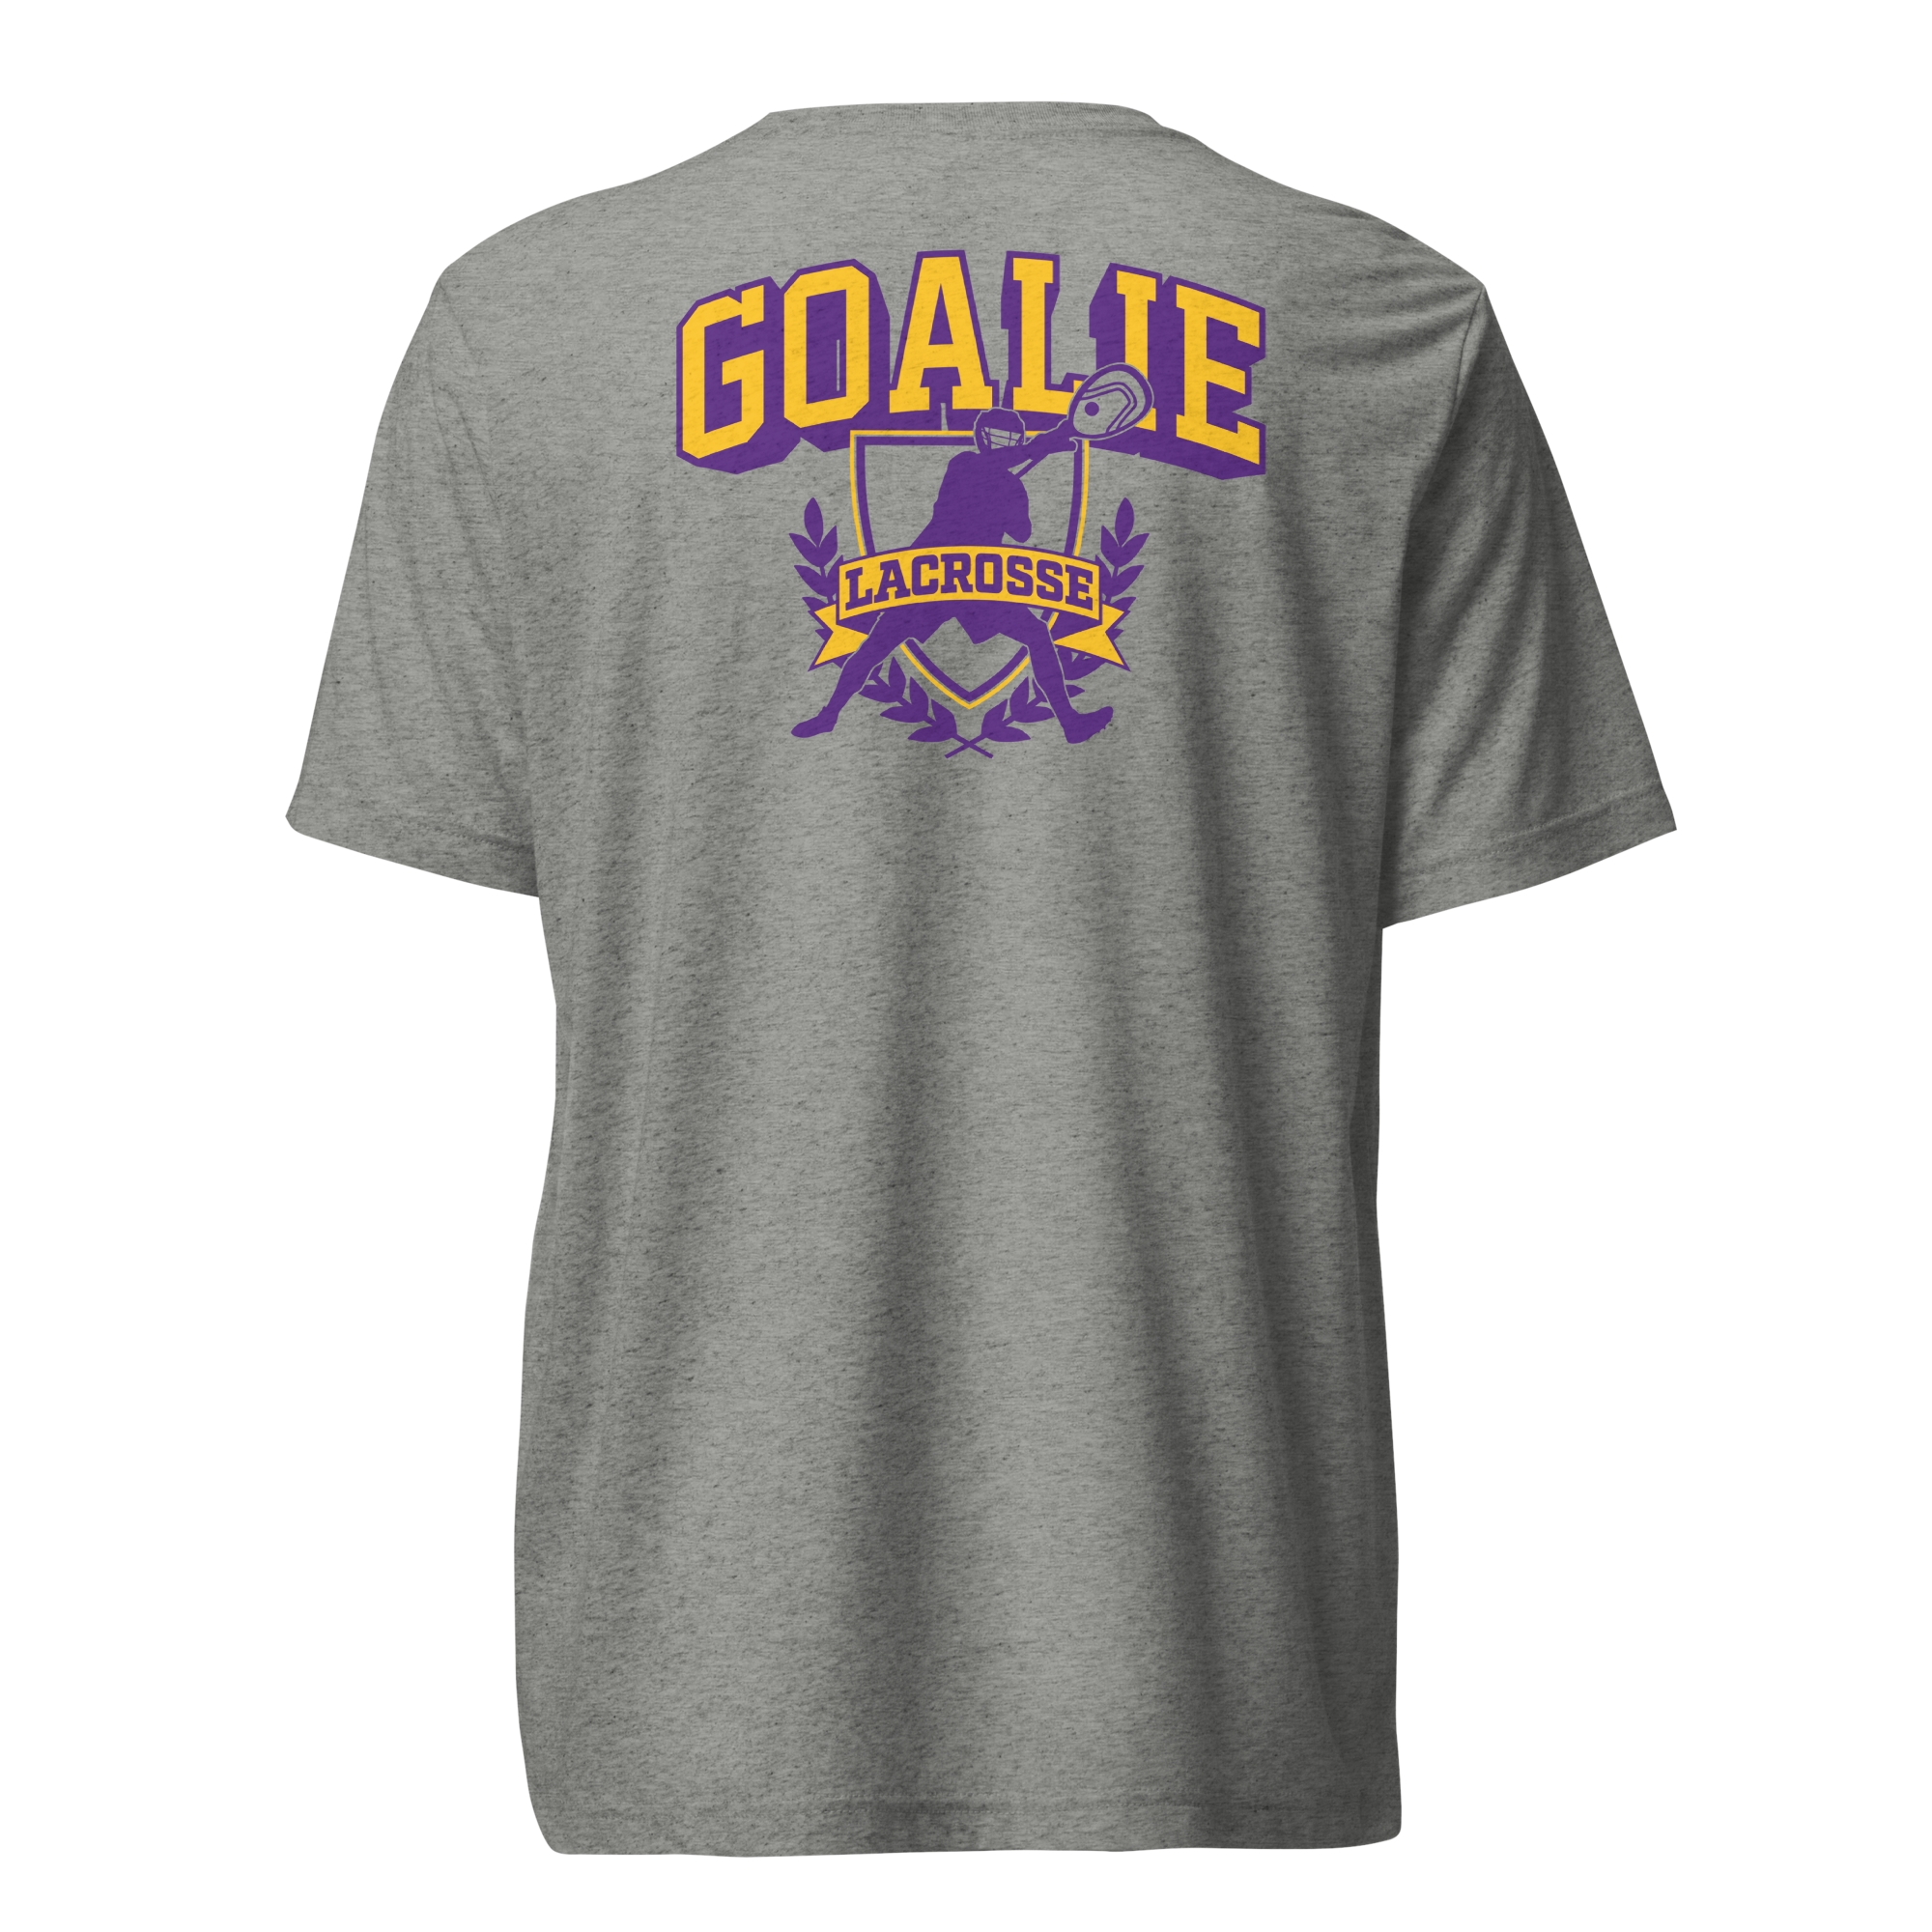 TLN Goalie Lacrosse T-Shirt